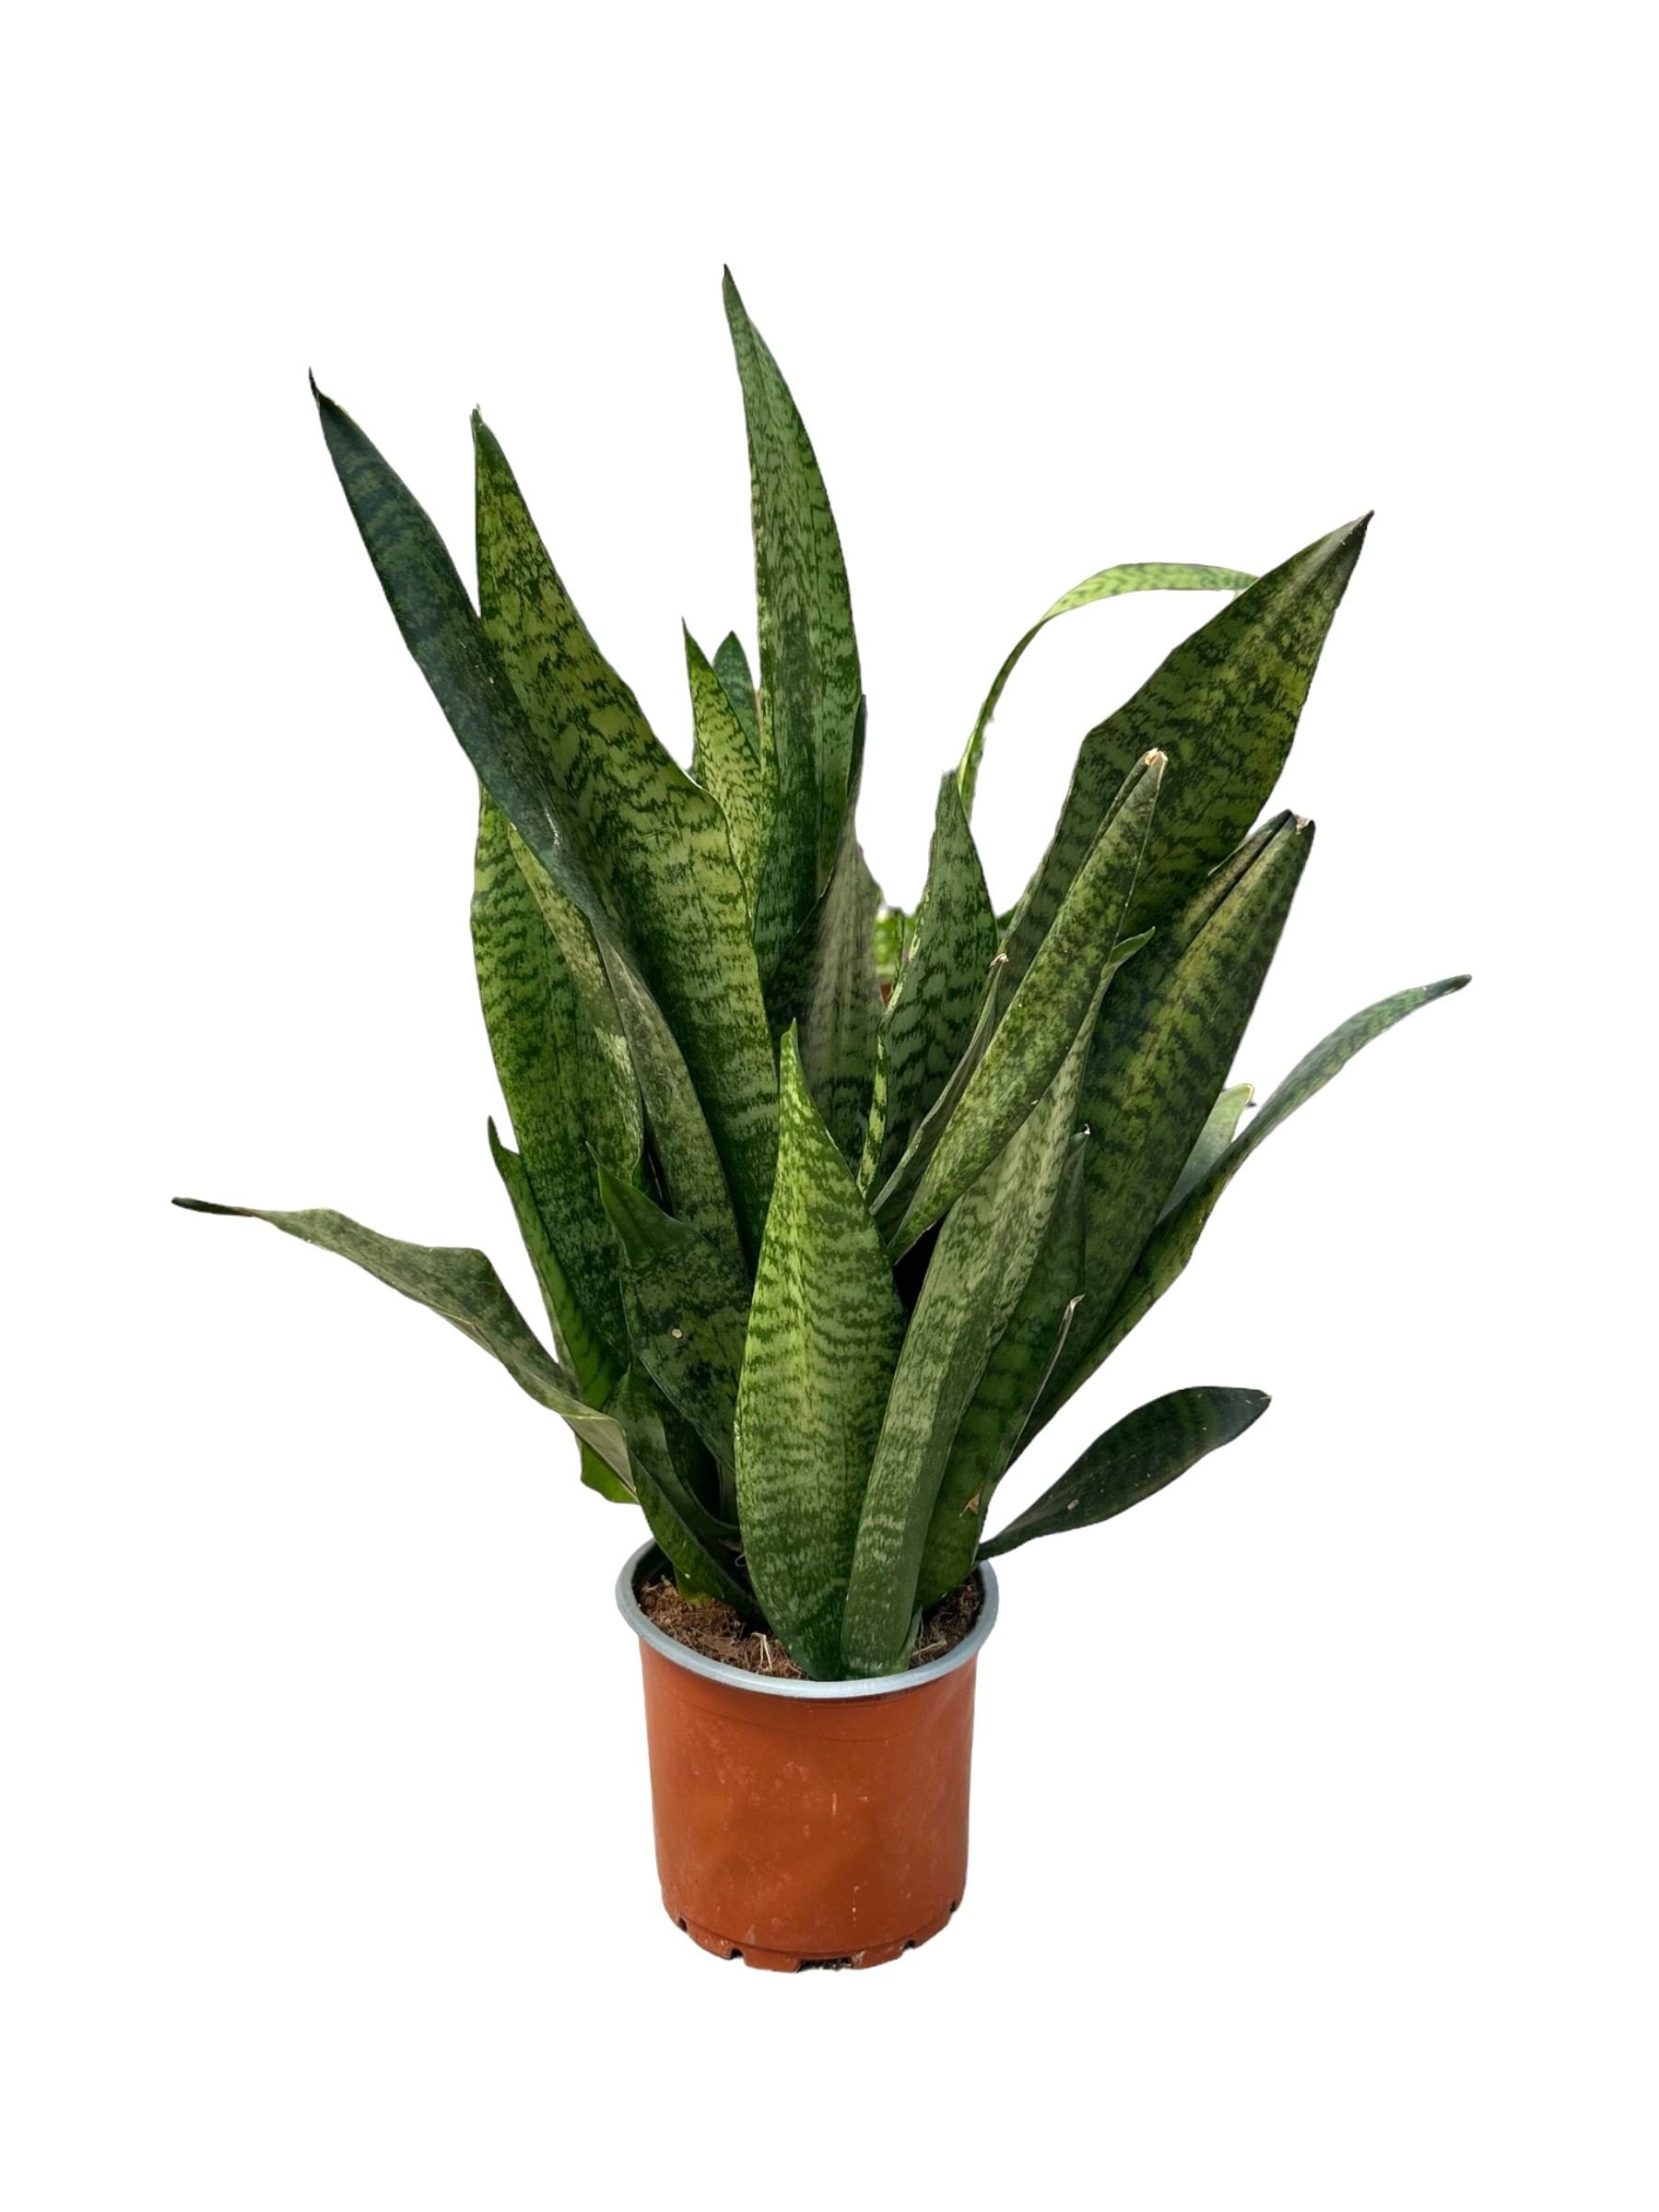 Havayı Temizleyen Bitki Seti (120 cm areka palmiyesi-pathos scindapsus- sanseveria zeylenica 50 cm)